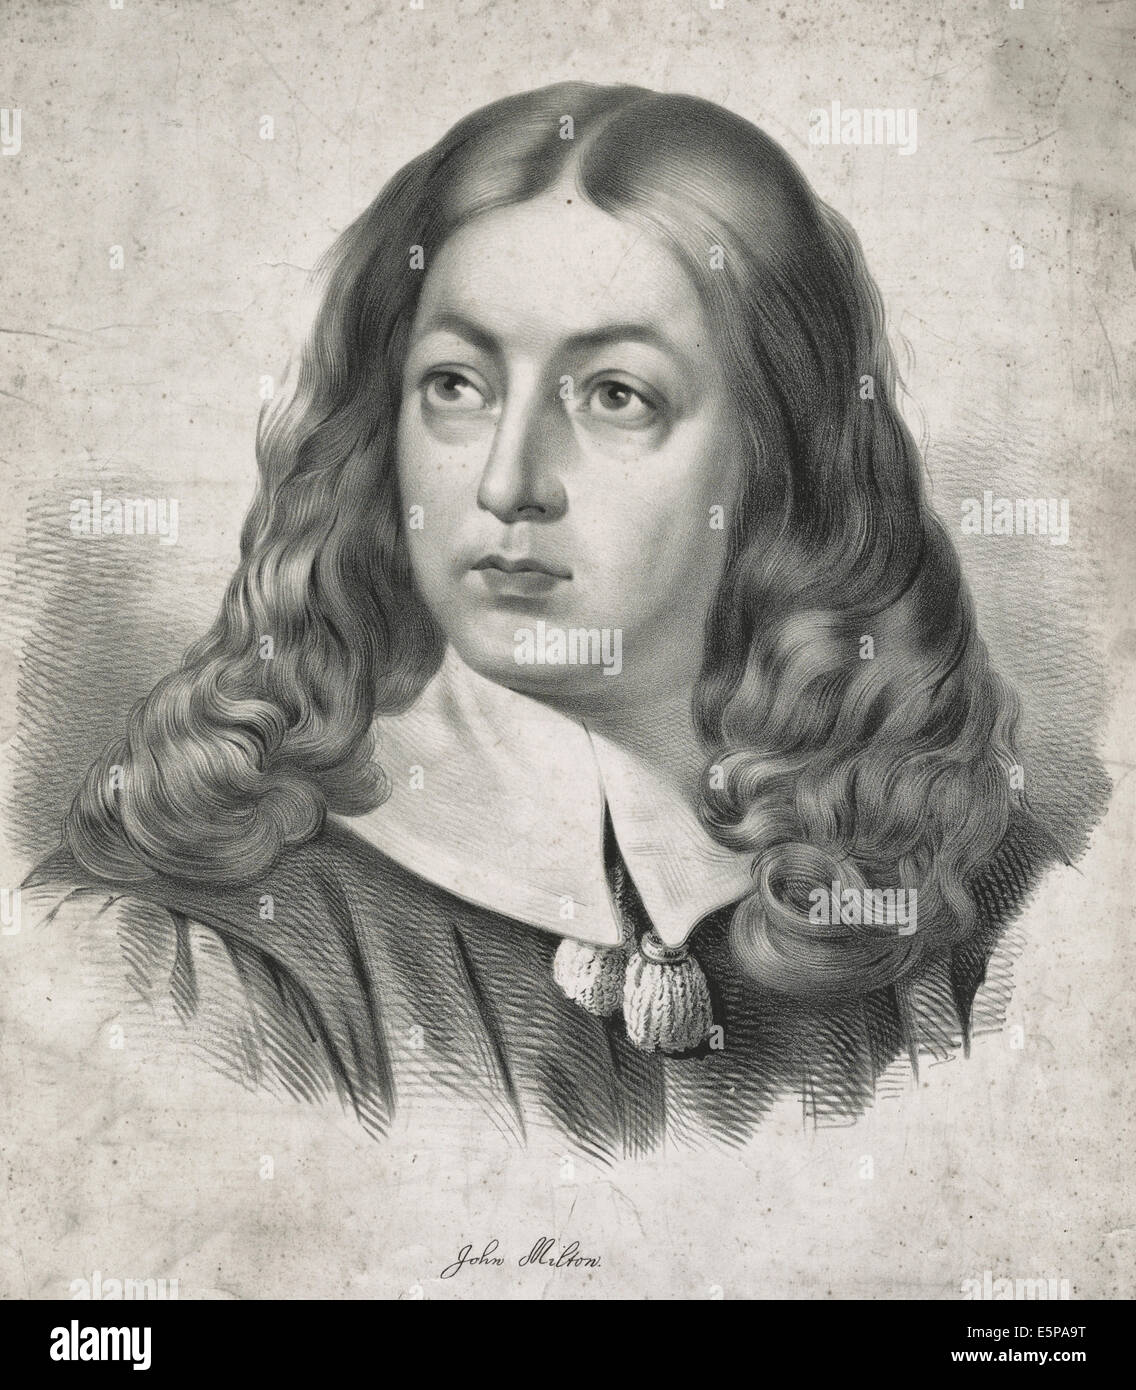 John Milton - Polemiker, ein englischer Dichter, Literat und ein Beamter des Commonwealth of England unter Oliver Cromwell. Stockfoto